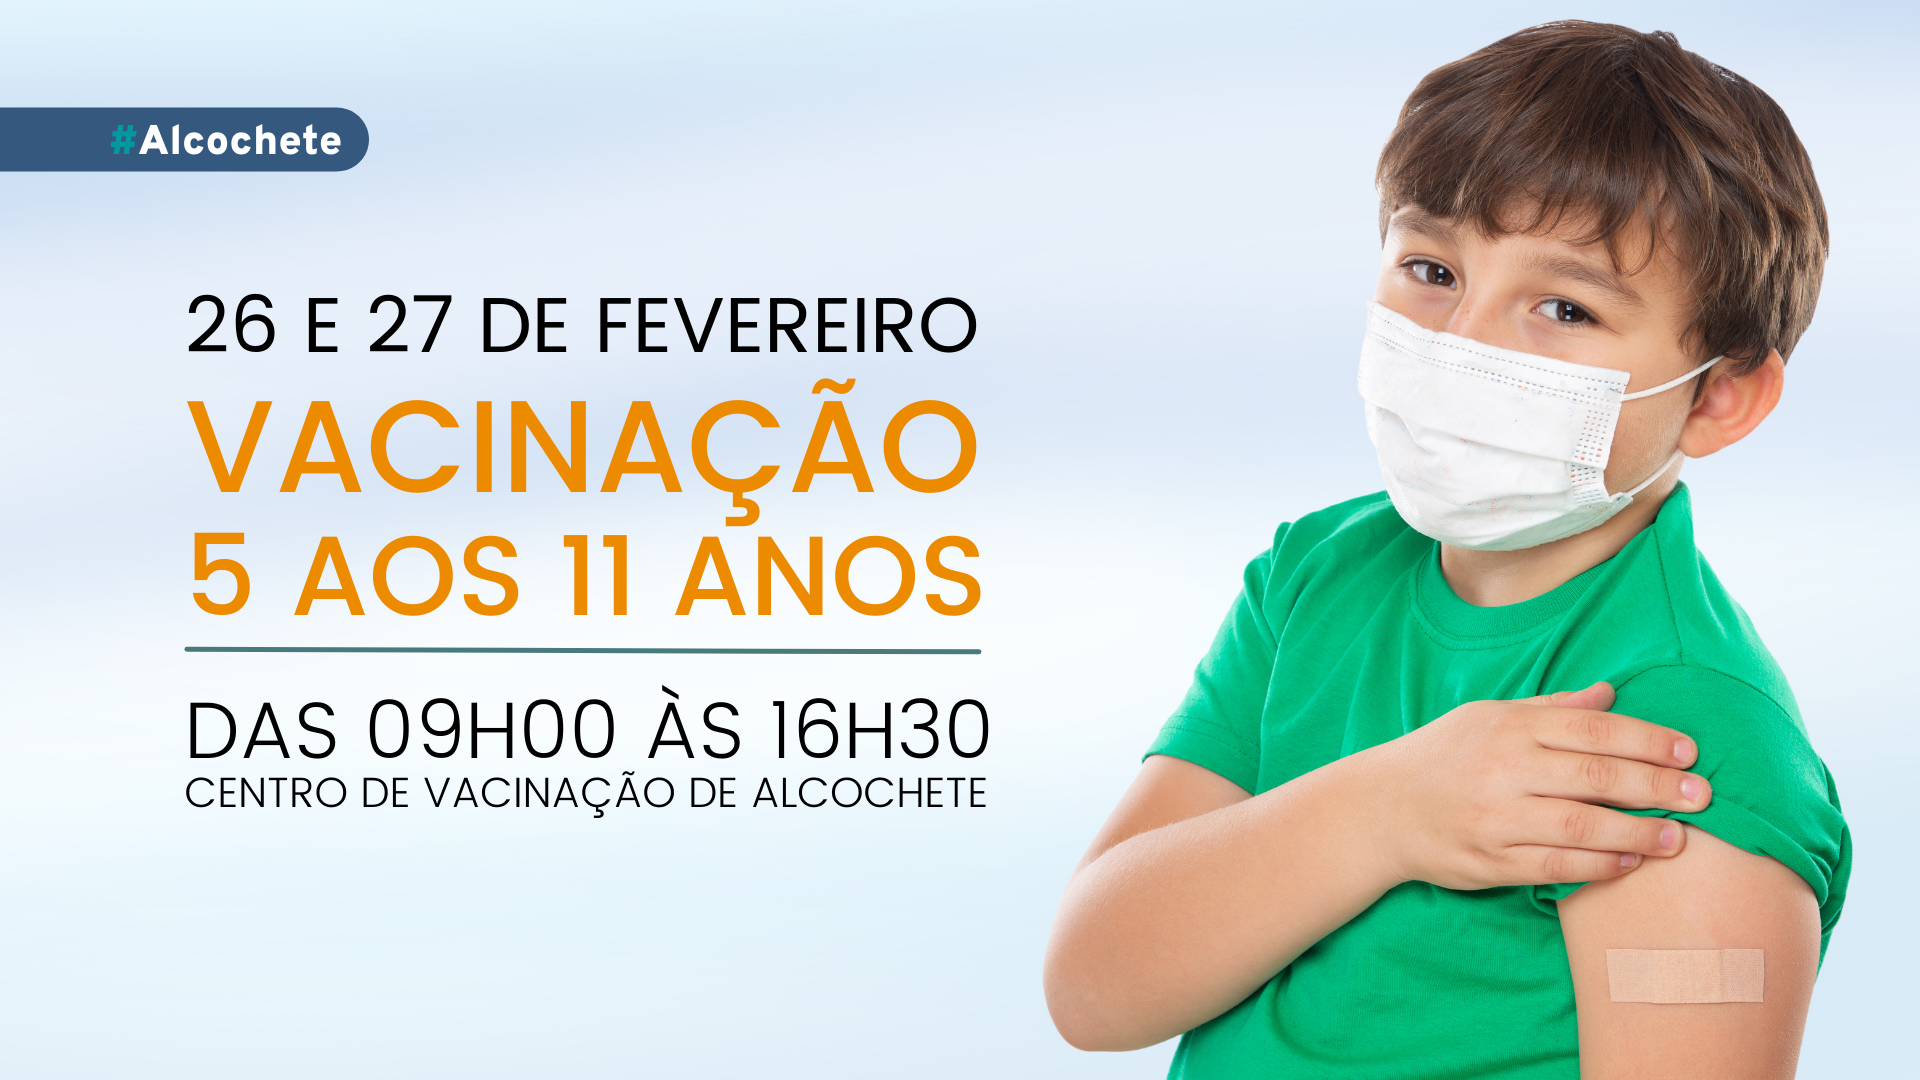 Vacinação de crianças em Alcochete nos dias 26 e 27 de fevereiro